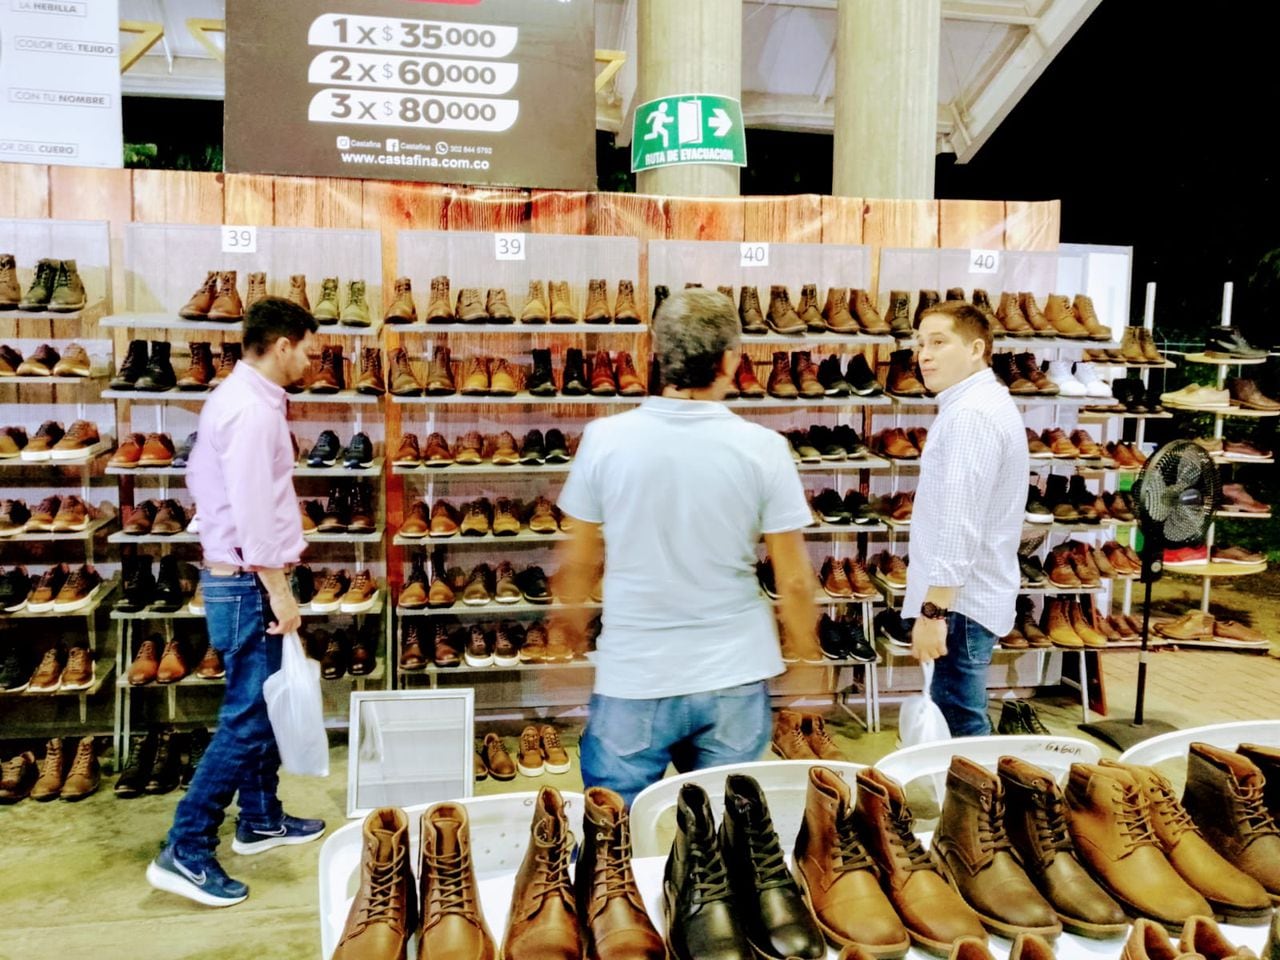 El Valle del Cauca es el segundo productor nacional de calzado, llegando a una producción anual de 11 millones de pares.